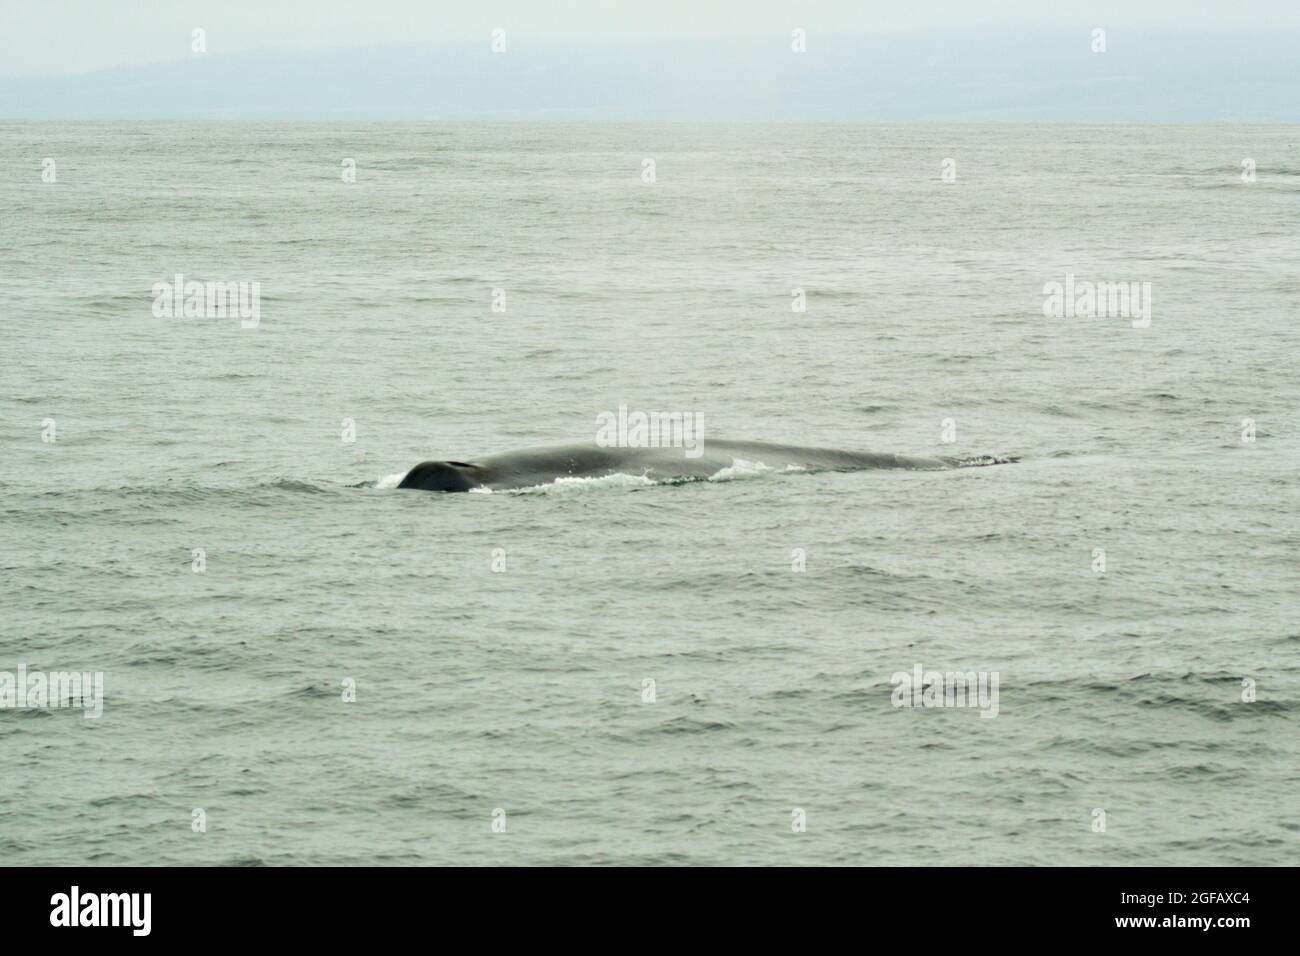 Hutte d'une baleine à bosse sauvage nageant dans l'océan Pacifique, dans la baie de Monterey, en Californie, en août. Jour couvert, ciel gris et mer. Banque D'Images